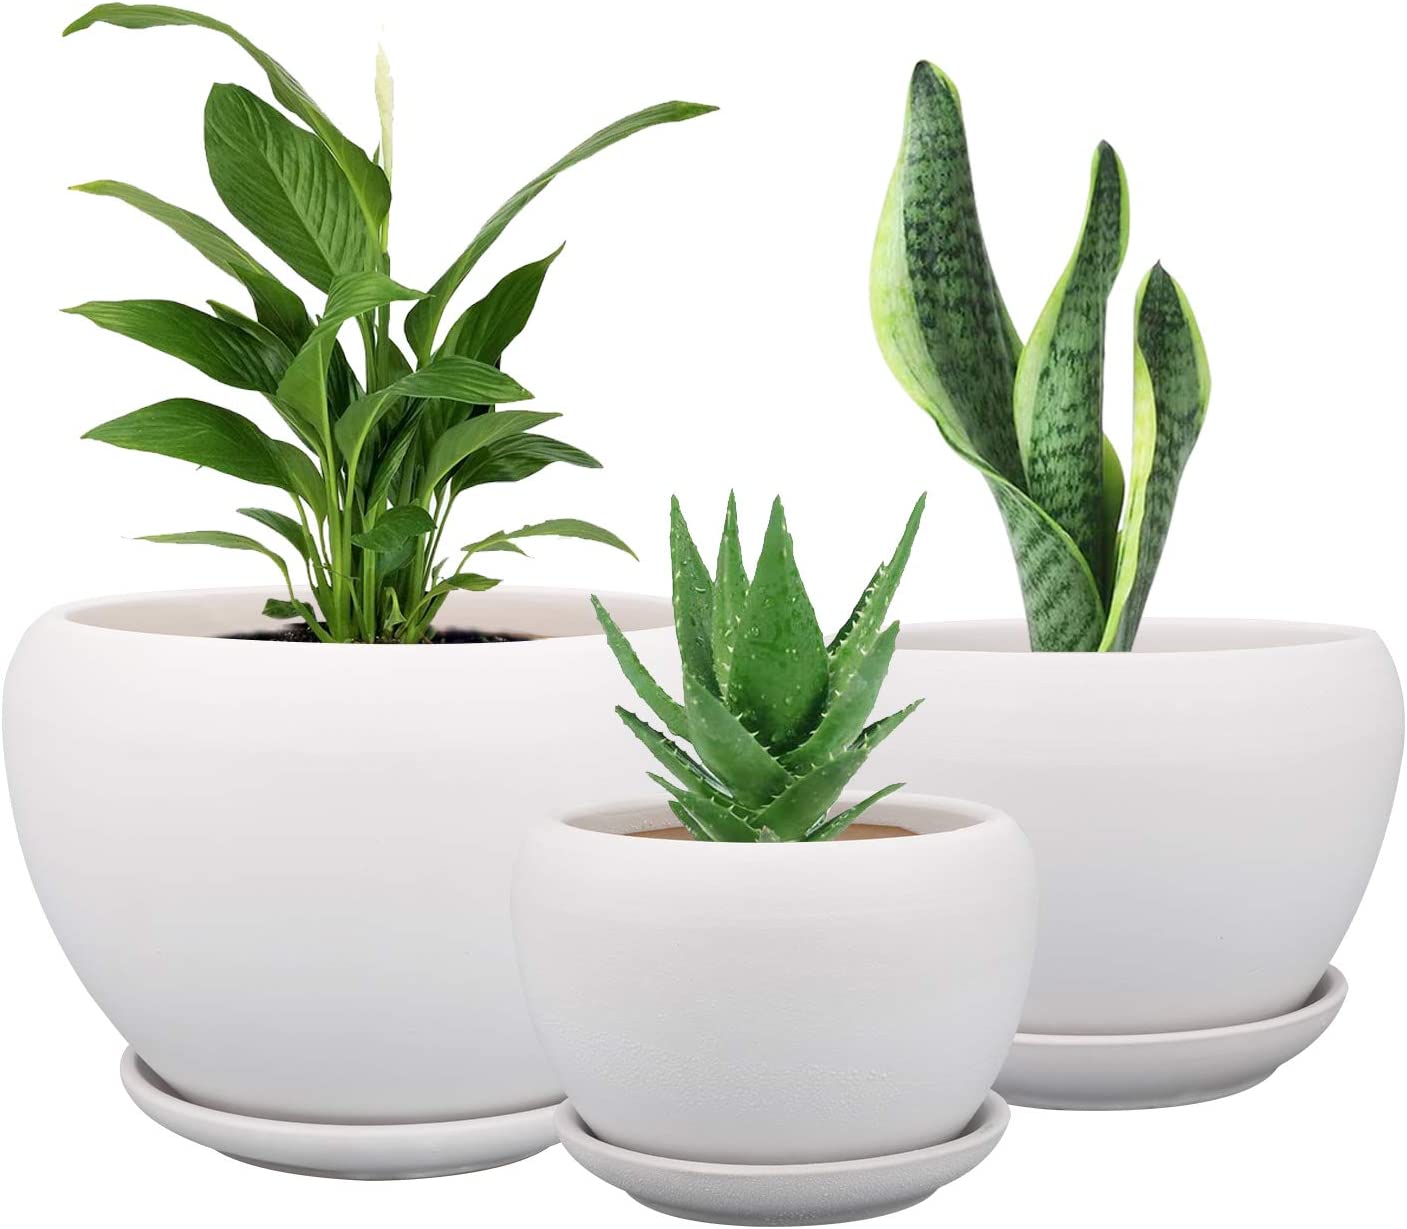 Brajttt Ceramic Flower Pots,3 Pack White Round Ceramic [...]